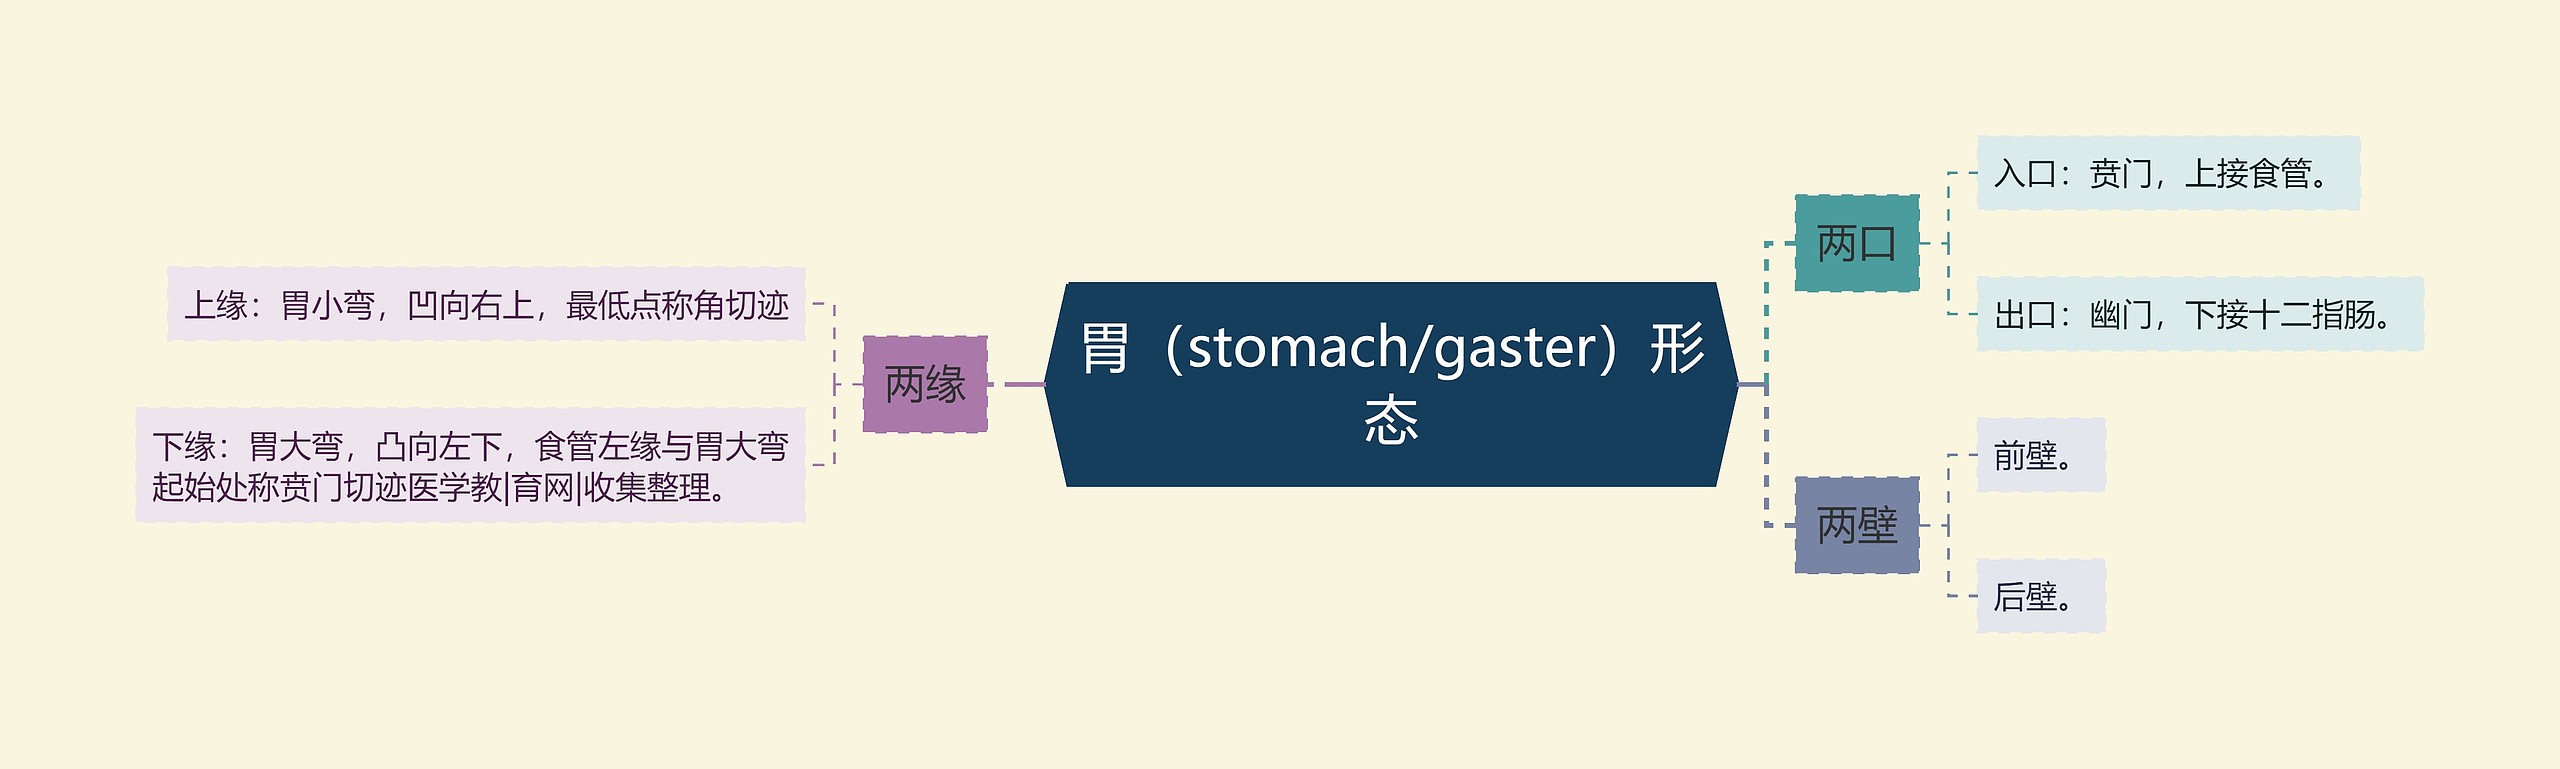 胃（stomach/gaster）形态思维导图